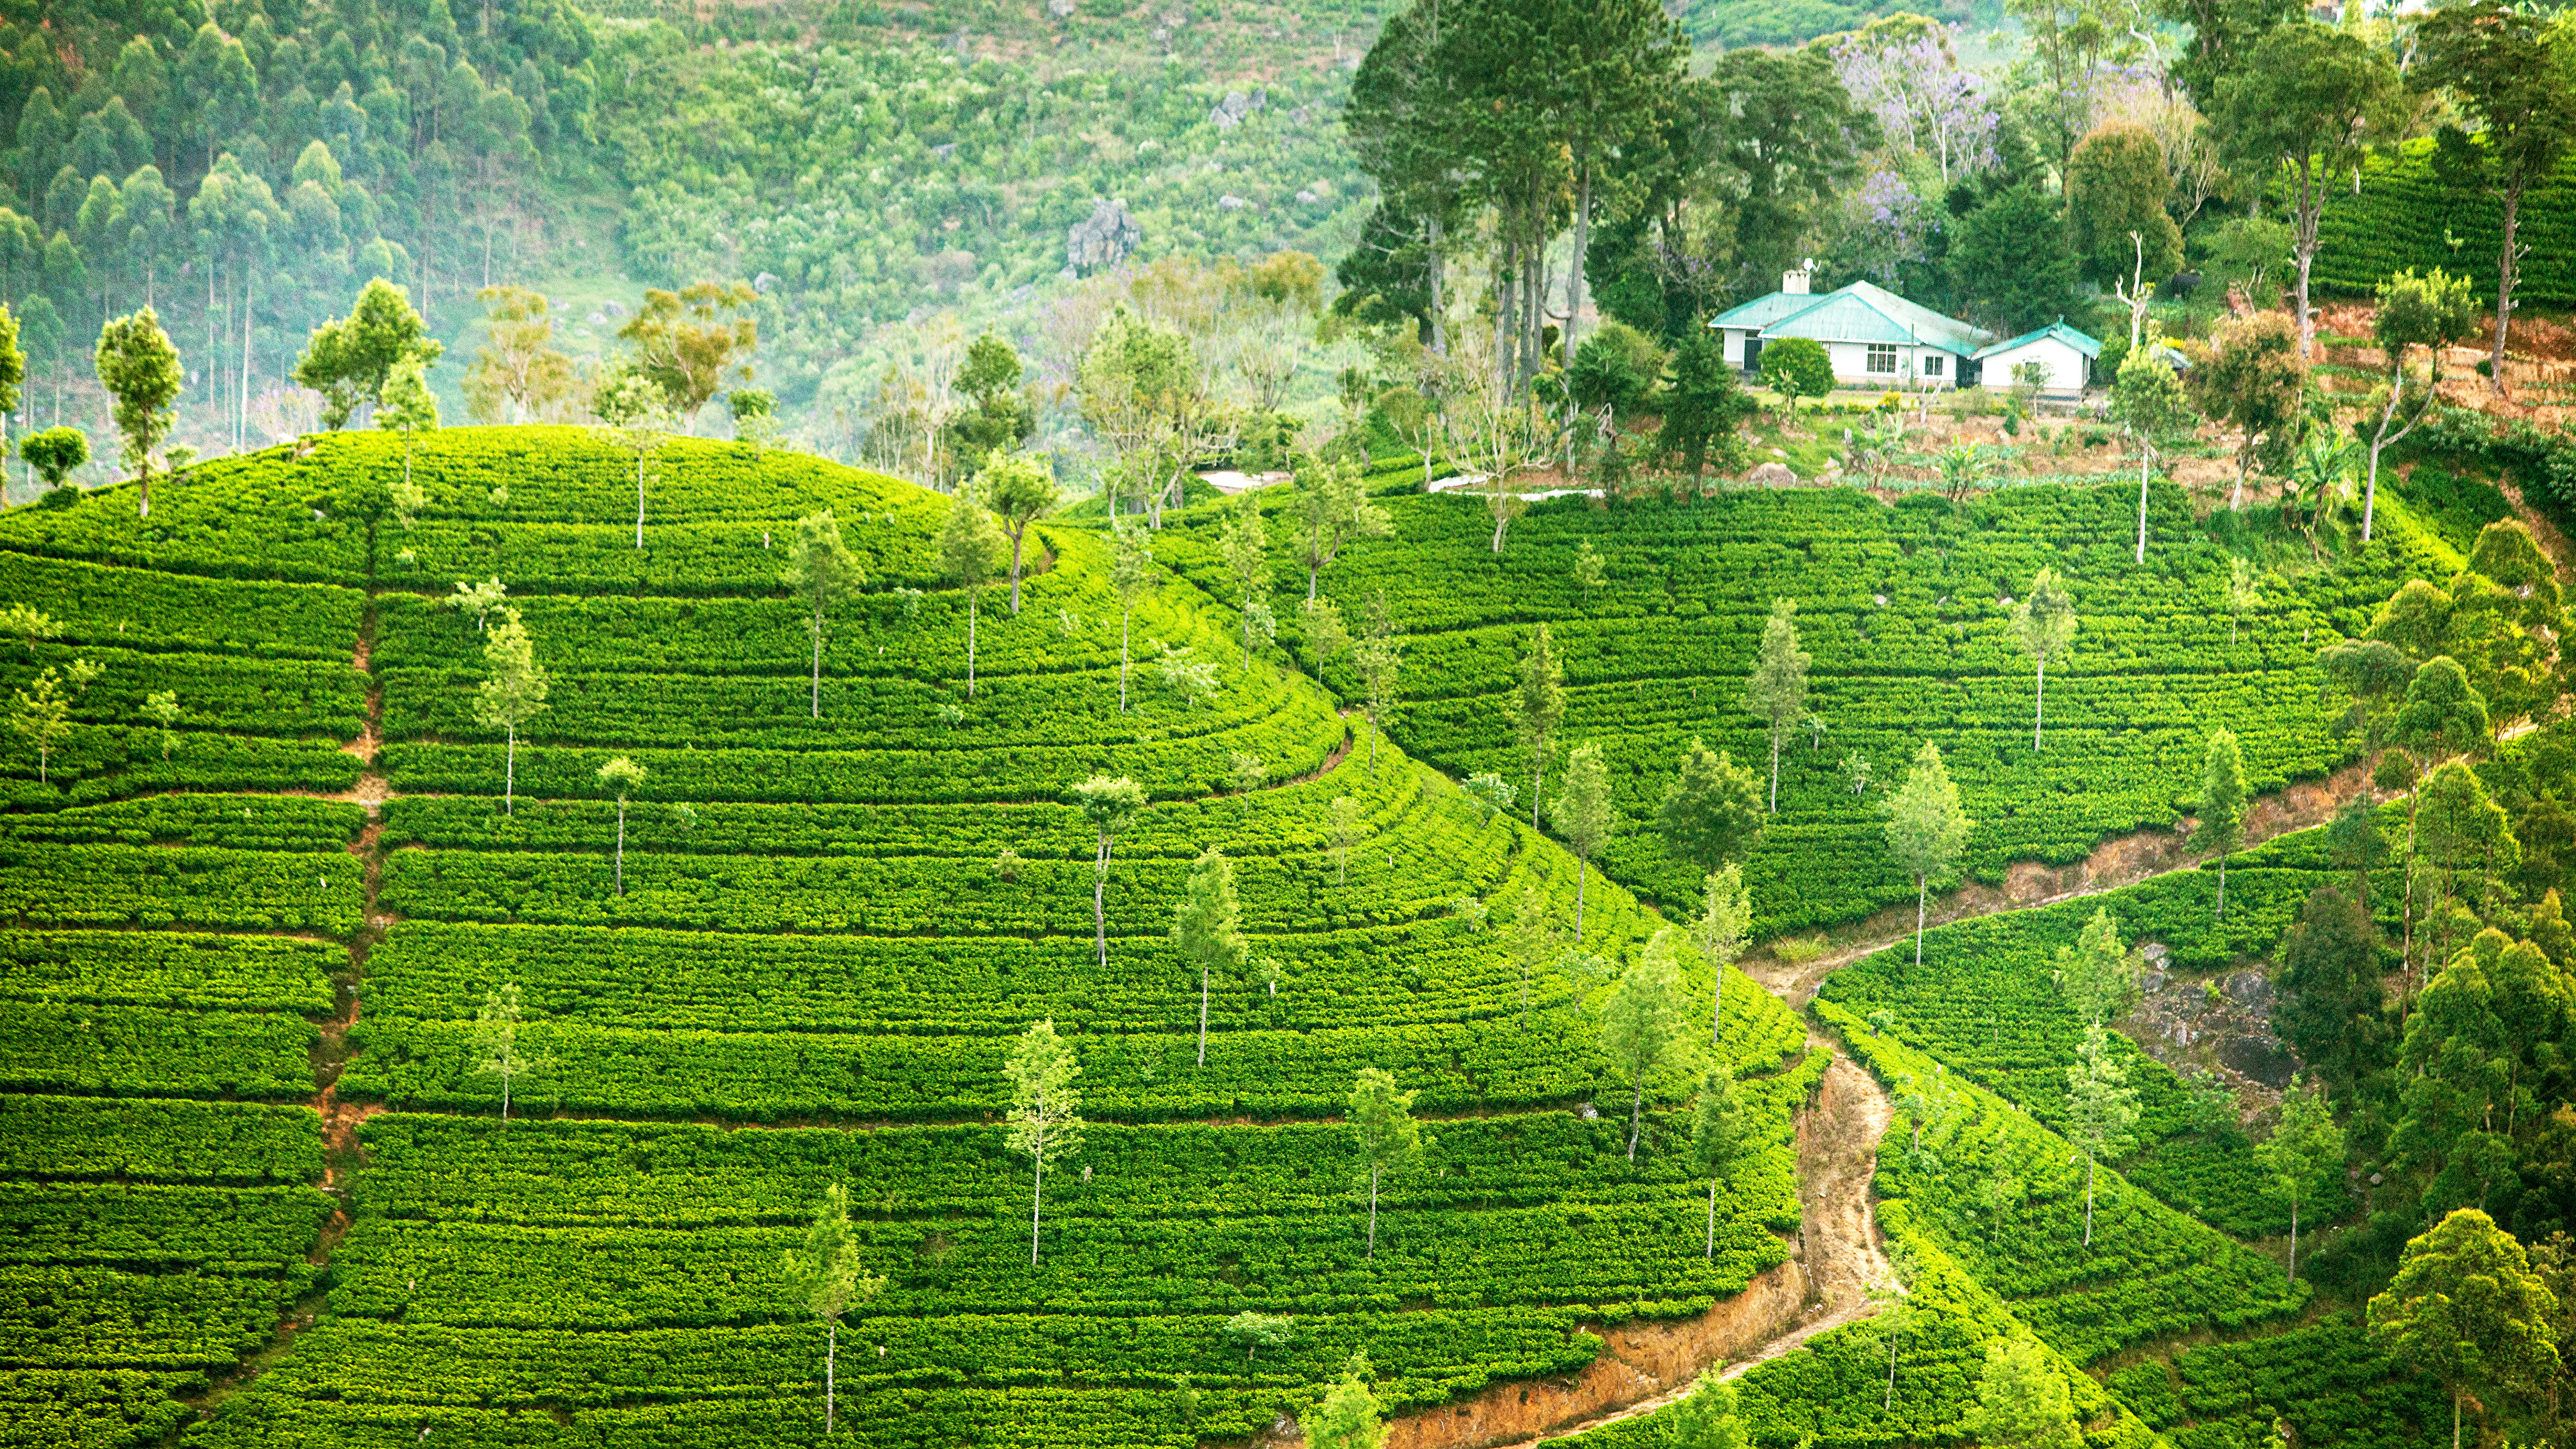 Шри ланка поля. Плантации Шри Ланки. Остров Цейлон. Шри Ланка фото чайные плантации. Рисовые террасы Шри Ланки.